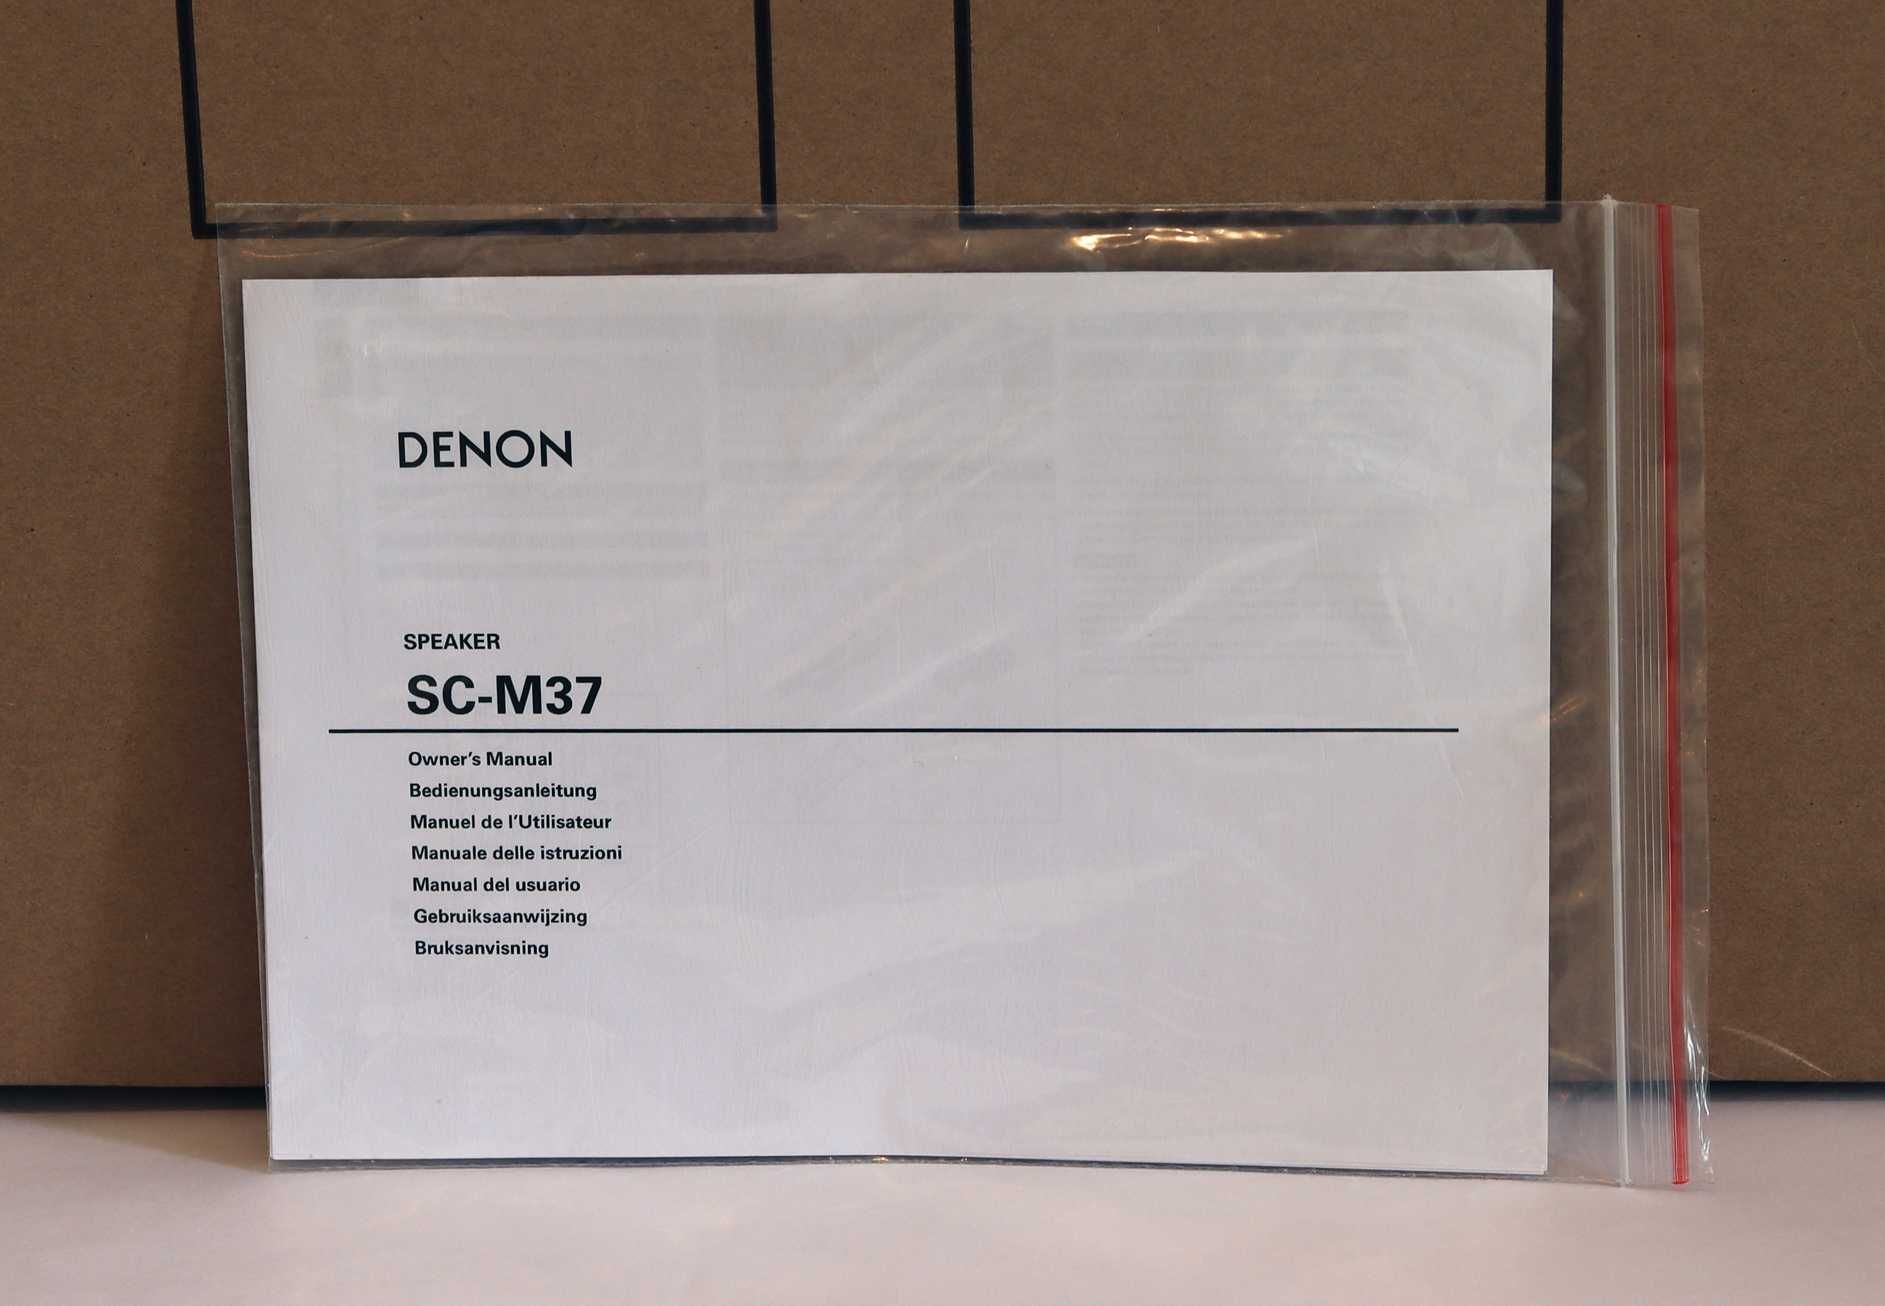 Pereche de boxe Hi-Fi marca Denon SC-M37